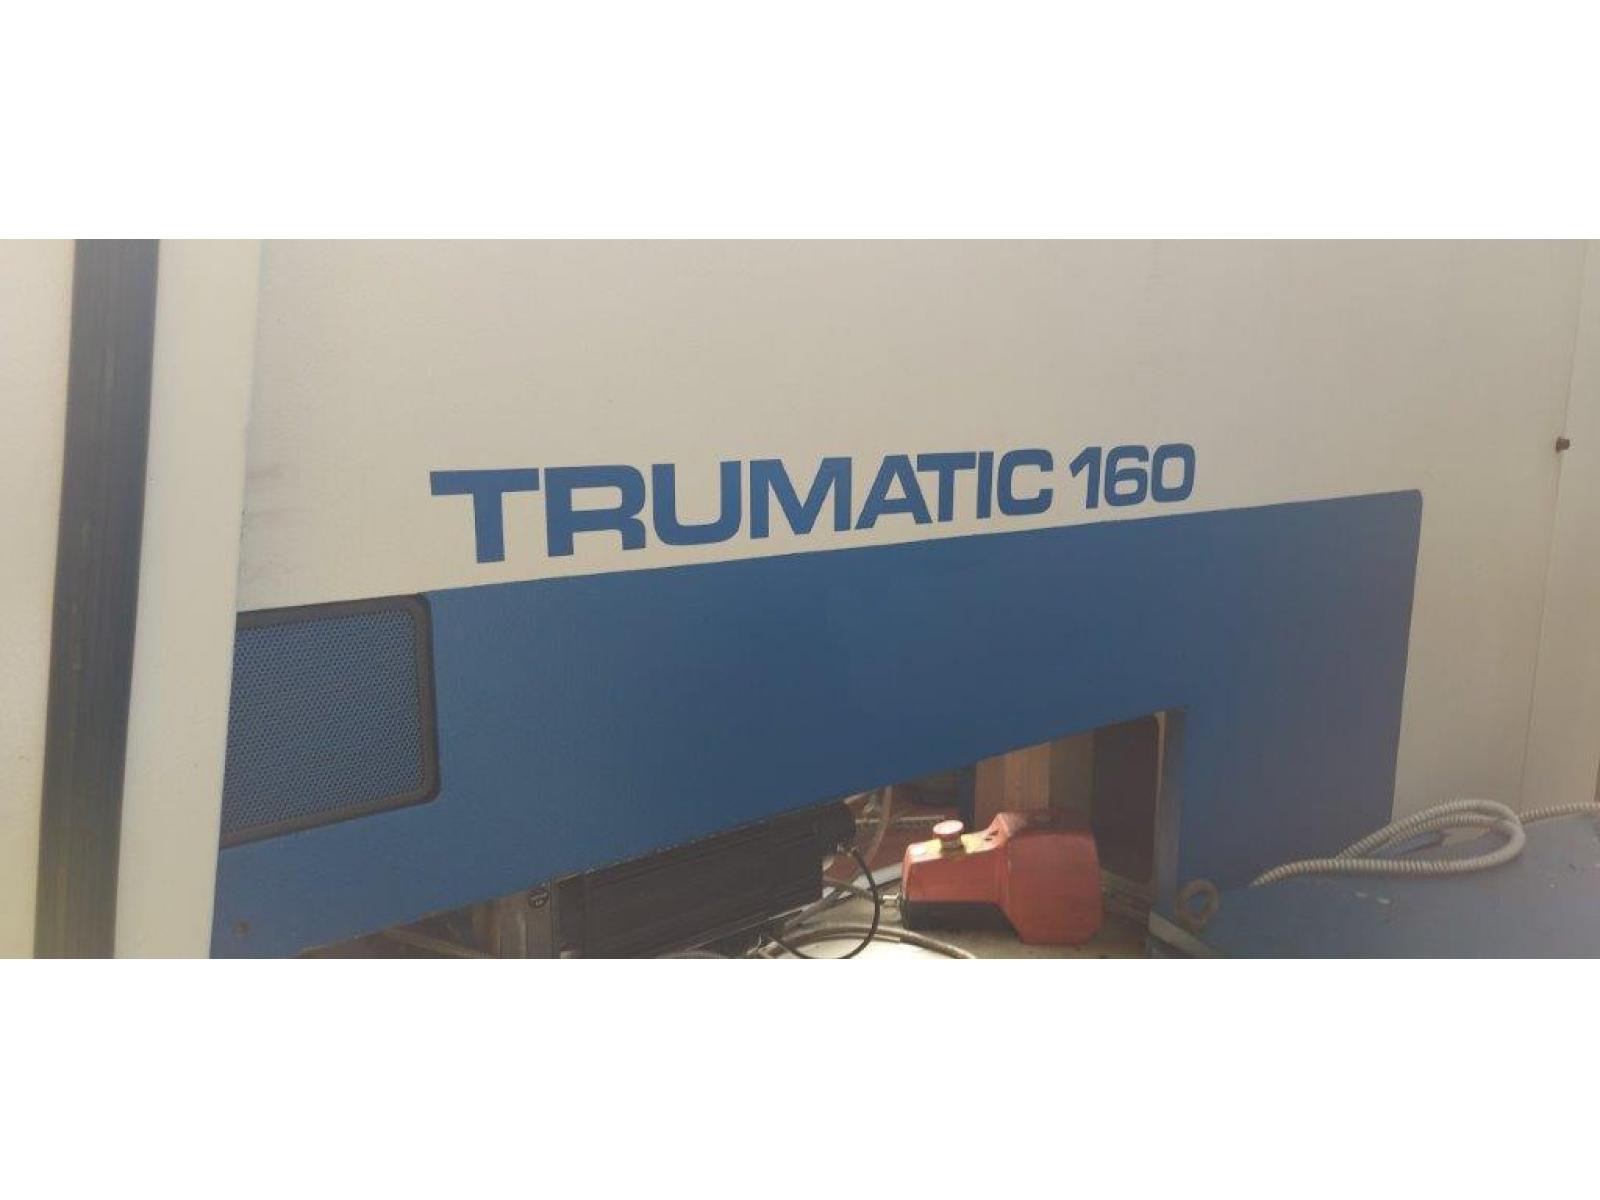 Punzonatrice Trumph 160  , con software e accessori